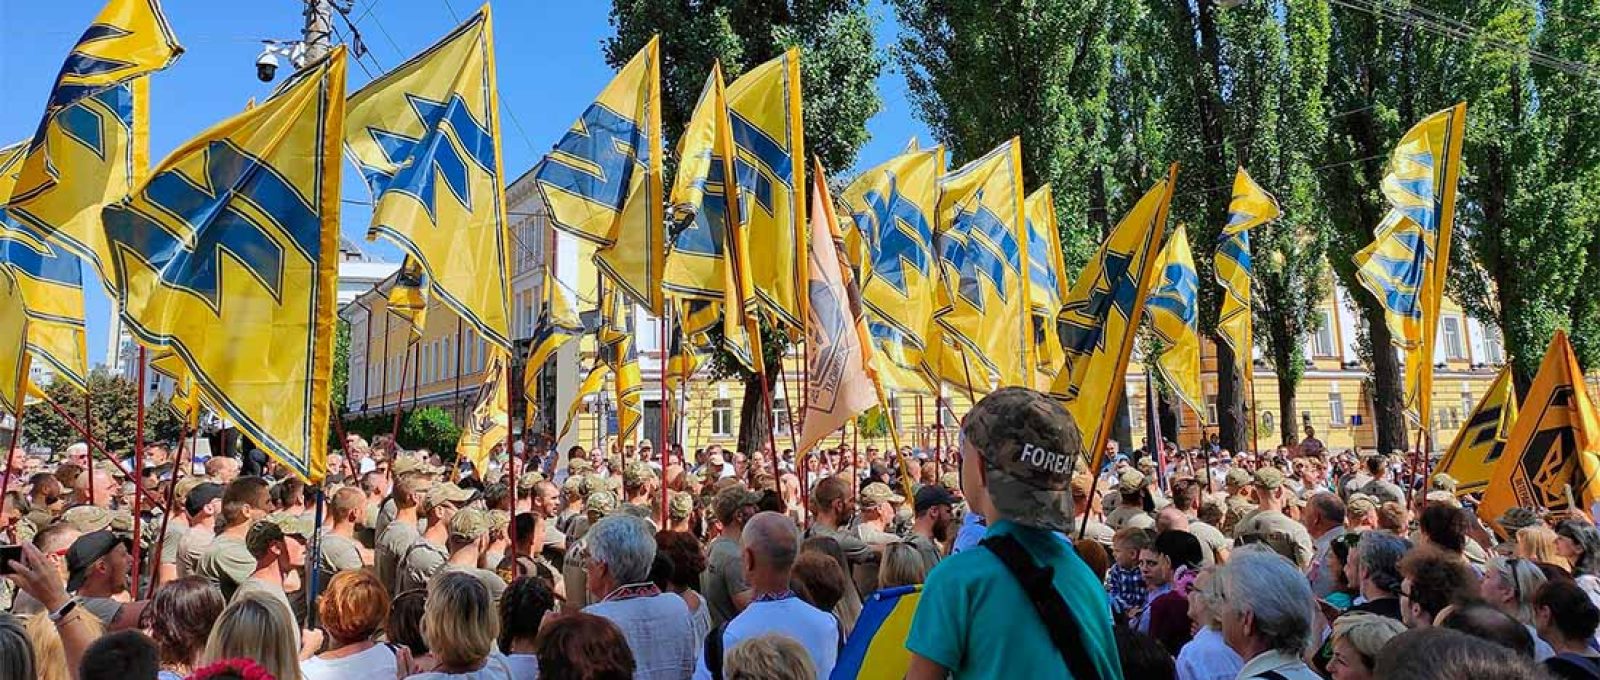 Marcha de veteranos do Batalhão Azov da Ucrânia em 2019 (Goo3/Wikimedia Commons/CC BY-SA 4.0 DEED).